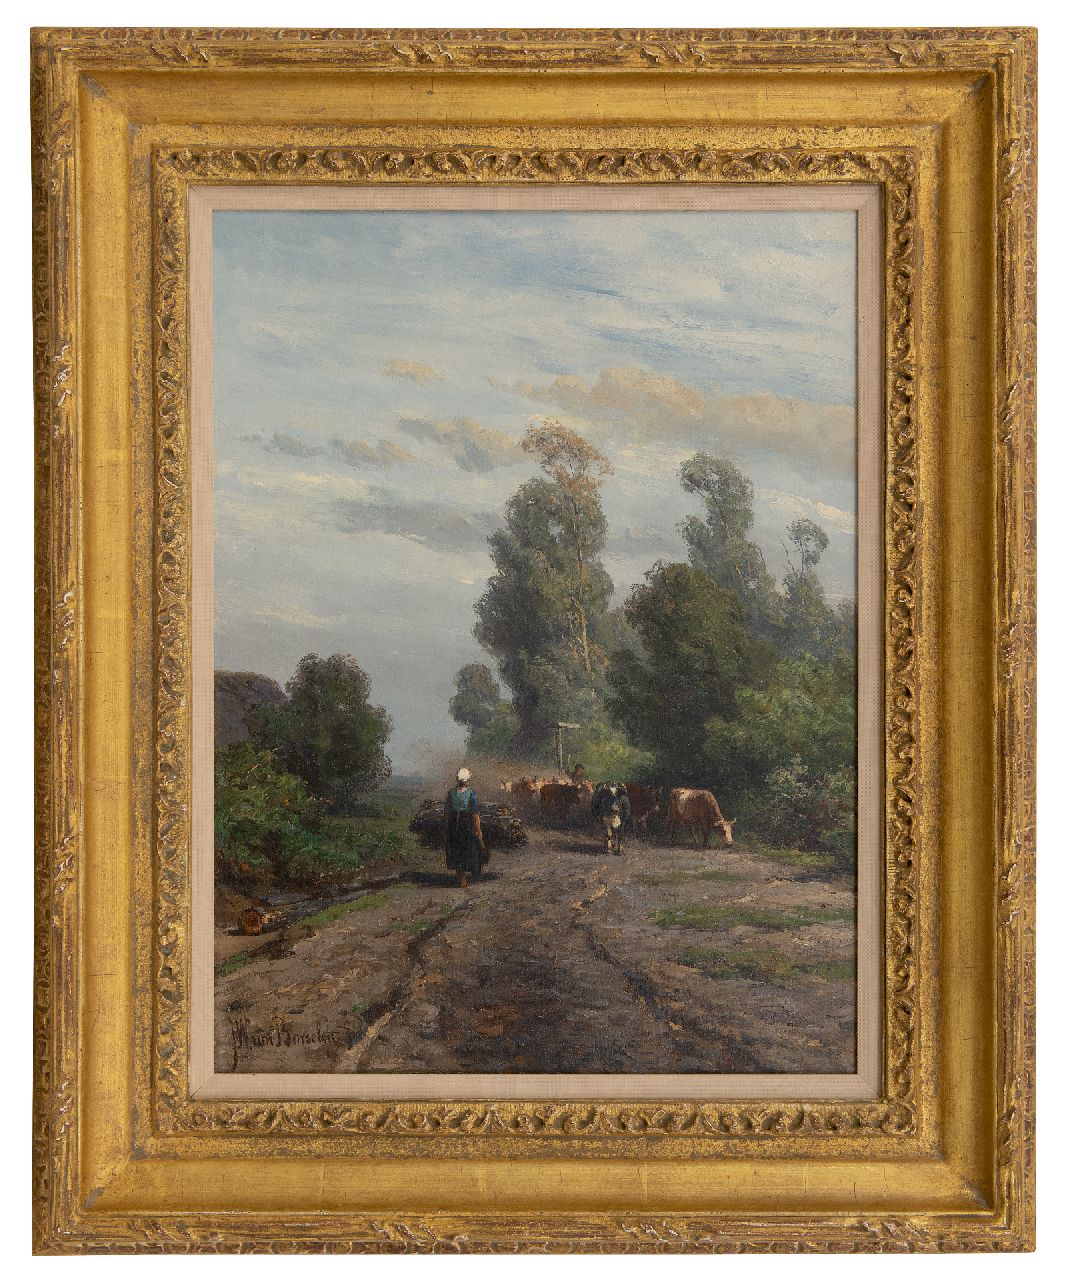 Borselen J.W. van | Jan Willem van Borselen | Schilderijen te koop aangeboden | Zomerlandschap met kudde en herder, olieverf op doek 40,9 x 31,0 cm, gesigneerd linksonder